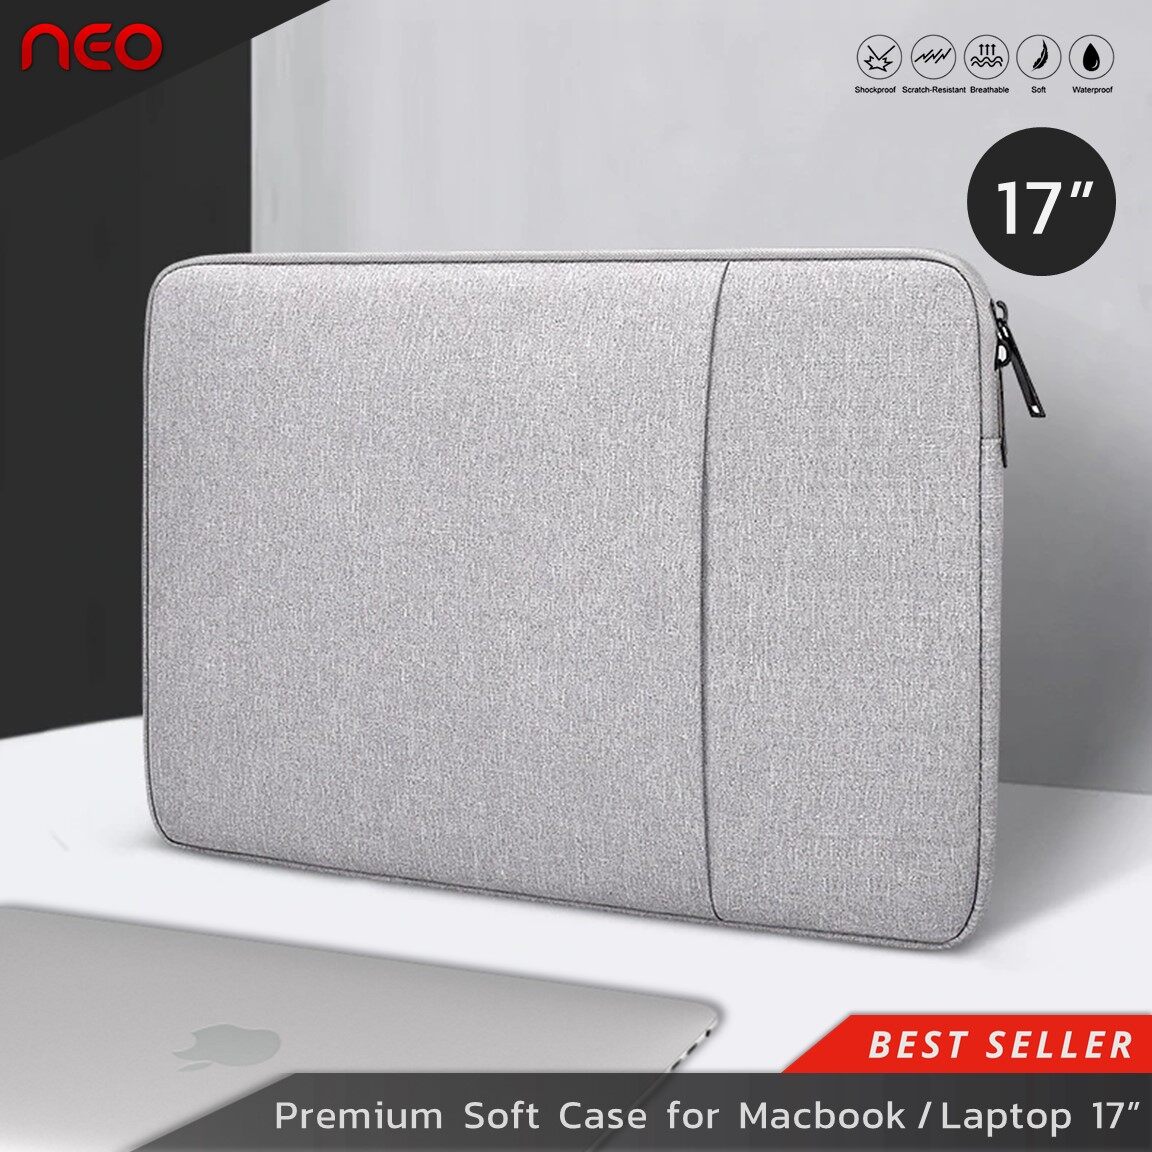 NEO เคสโน้ตบุ๊ค กระเป๋าโน๊ตบุ๊ค ขนาด17-17.3 นิ้ว Soft Case ซองแล็ปท็อป เคสMacbook Pro ซองใส่โน๊ตบุ๊ค กันฝุ่น กันรอย กันกระแทก Laptop Bag Macbook Sleeve Case 17-17.3 inch